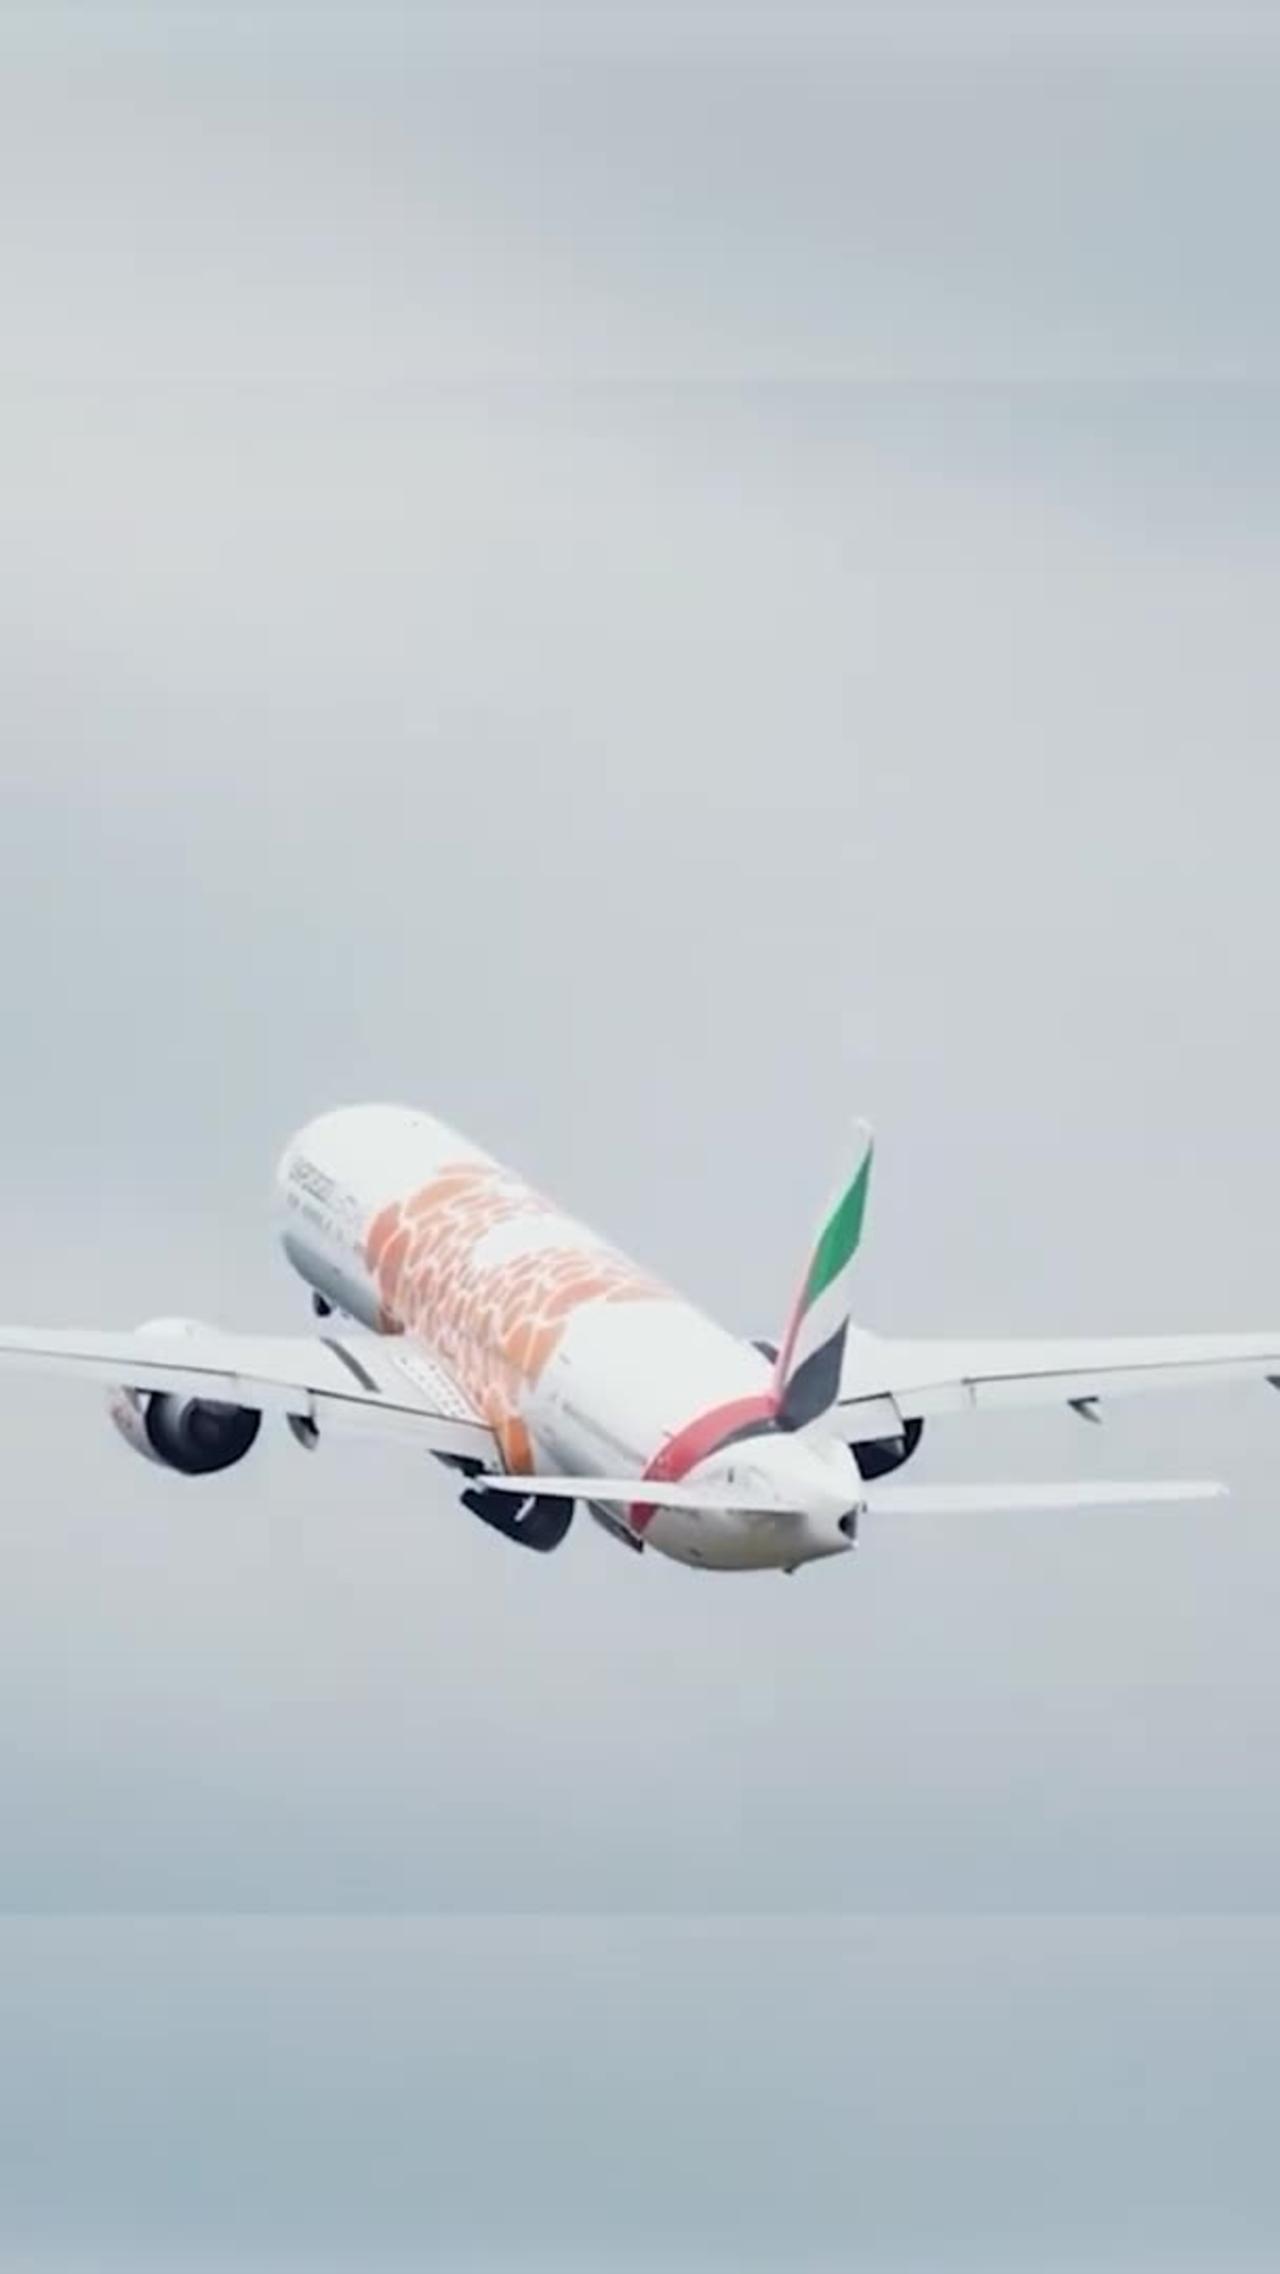 Emirates 777 Orange Expo departing Manchester